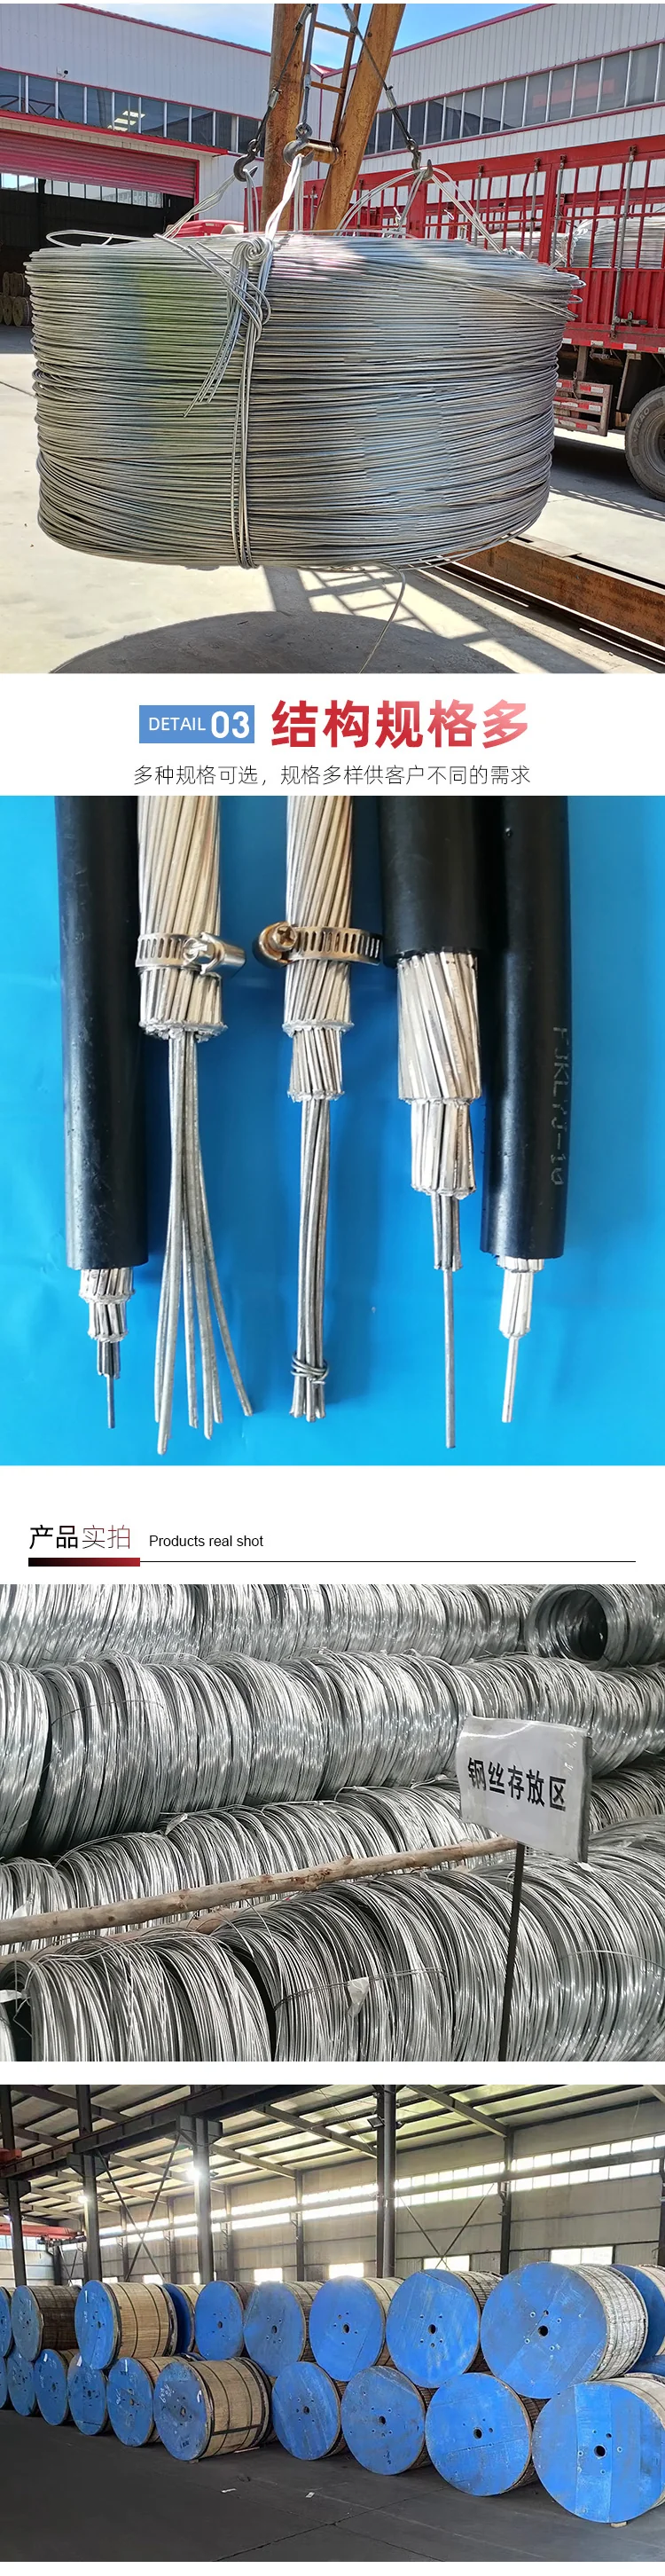 JKLYJ 全铝架空绝缘电缆(图6)